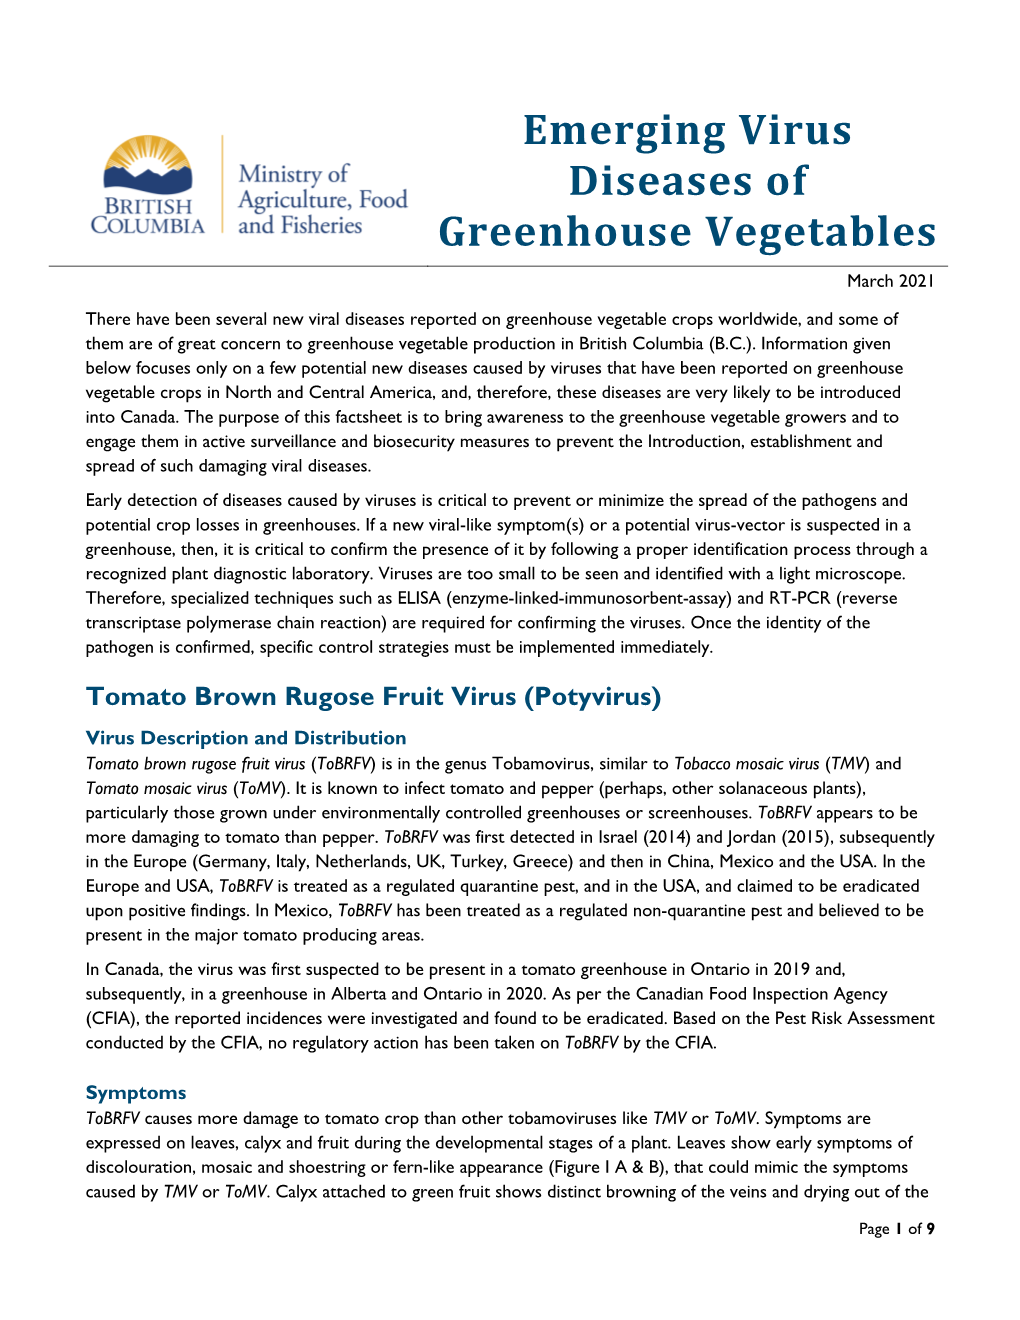 Emerging Virus Diseases of Greenhouse Vegetable Crops